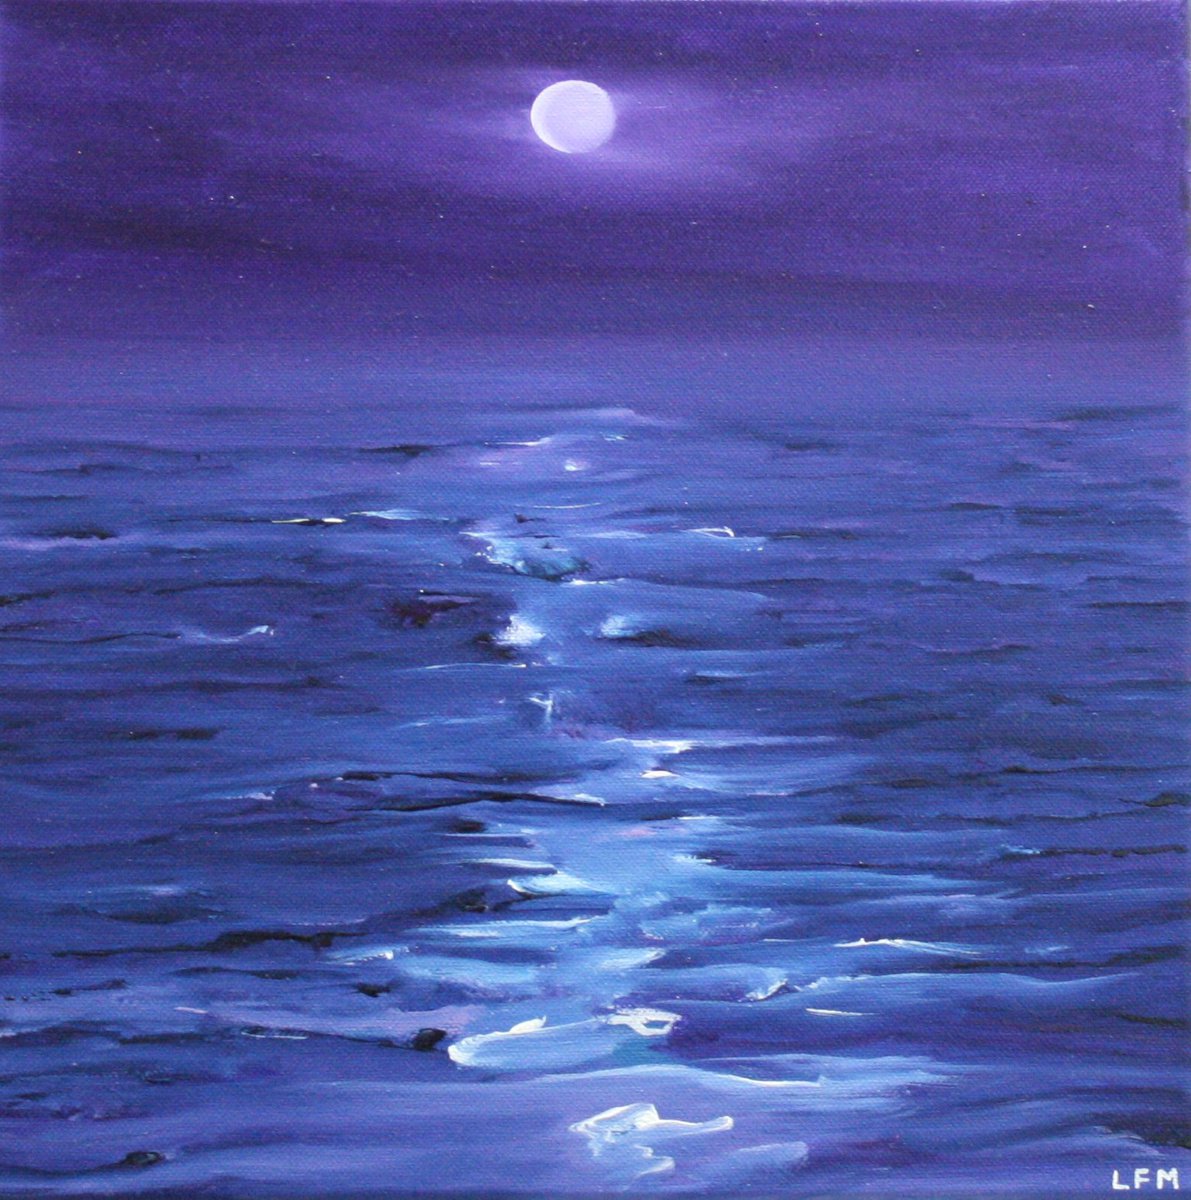 Moonlight over the Ocean by Linda Monk